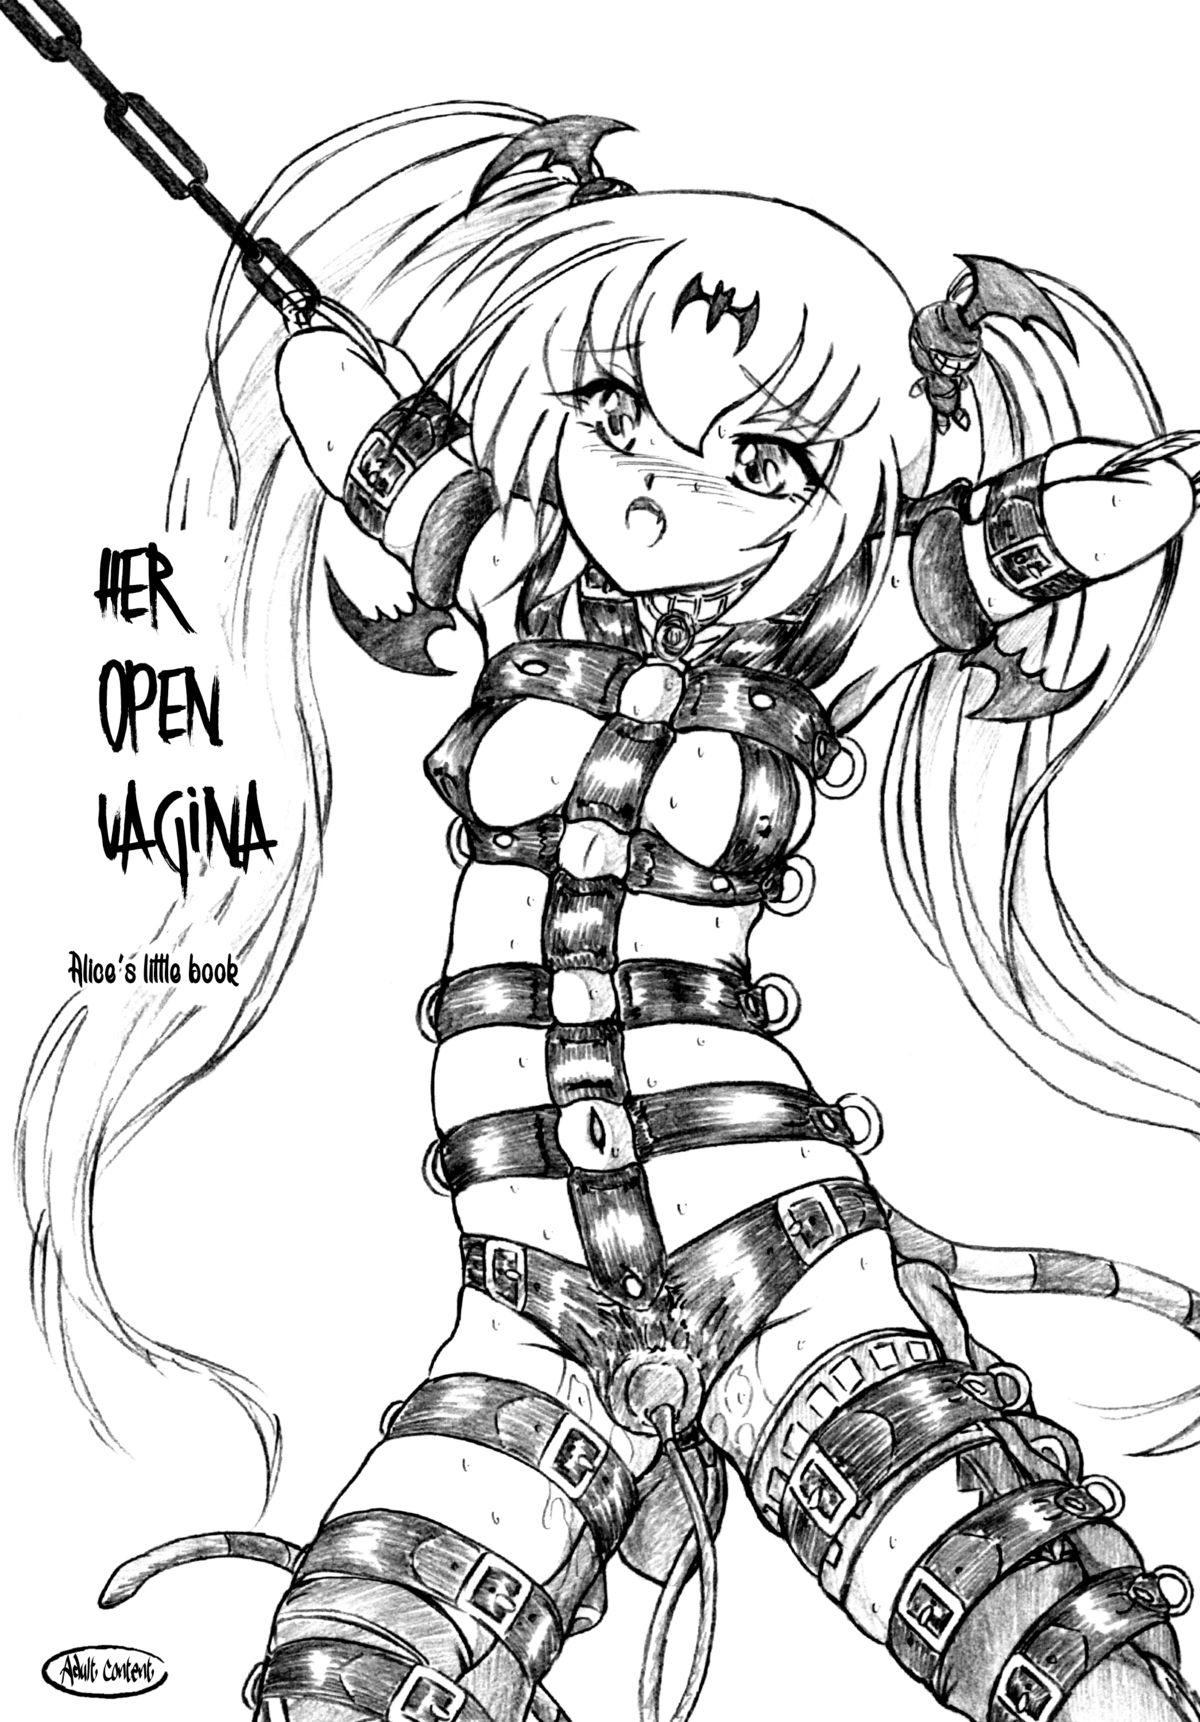 Chitsu o Hiraku Mono | Her Open Vagina 1